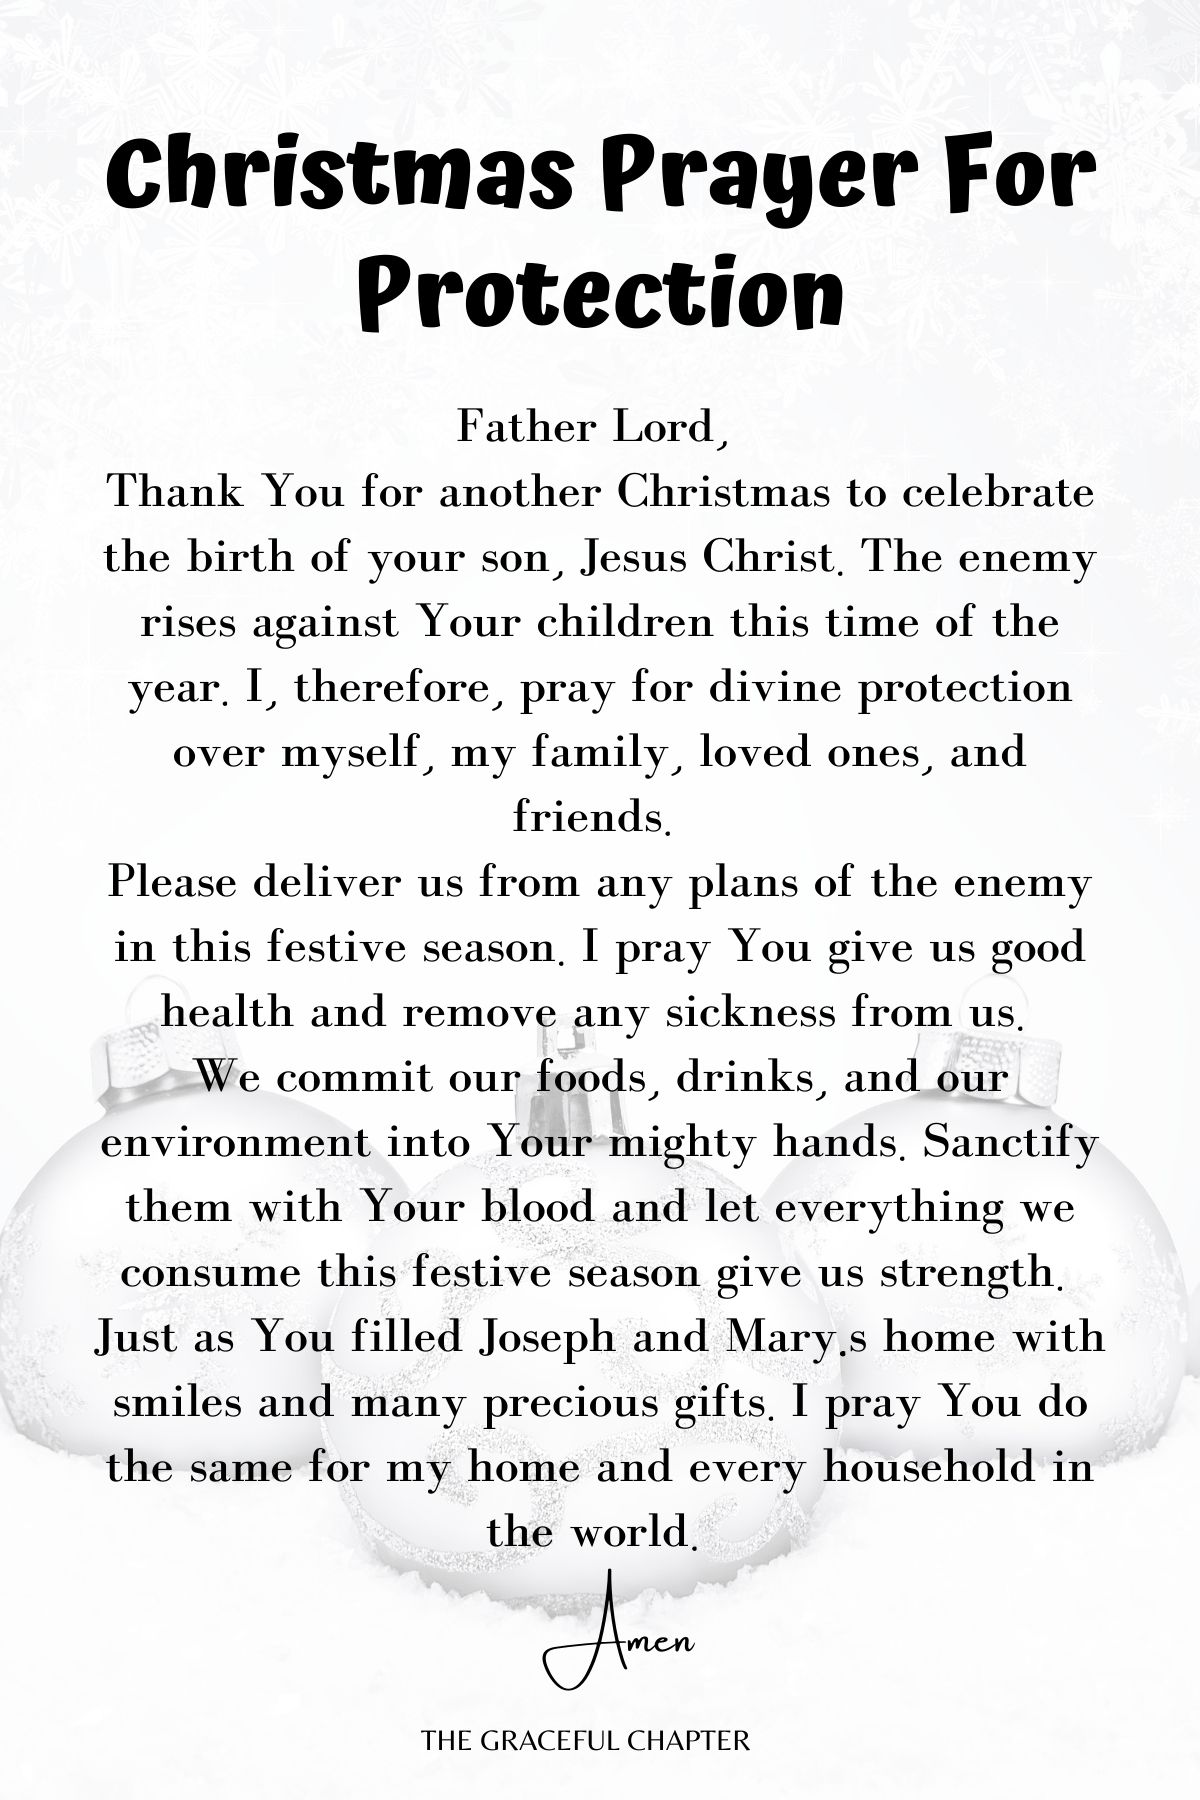 Christmas prayer for protection